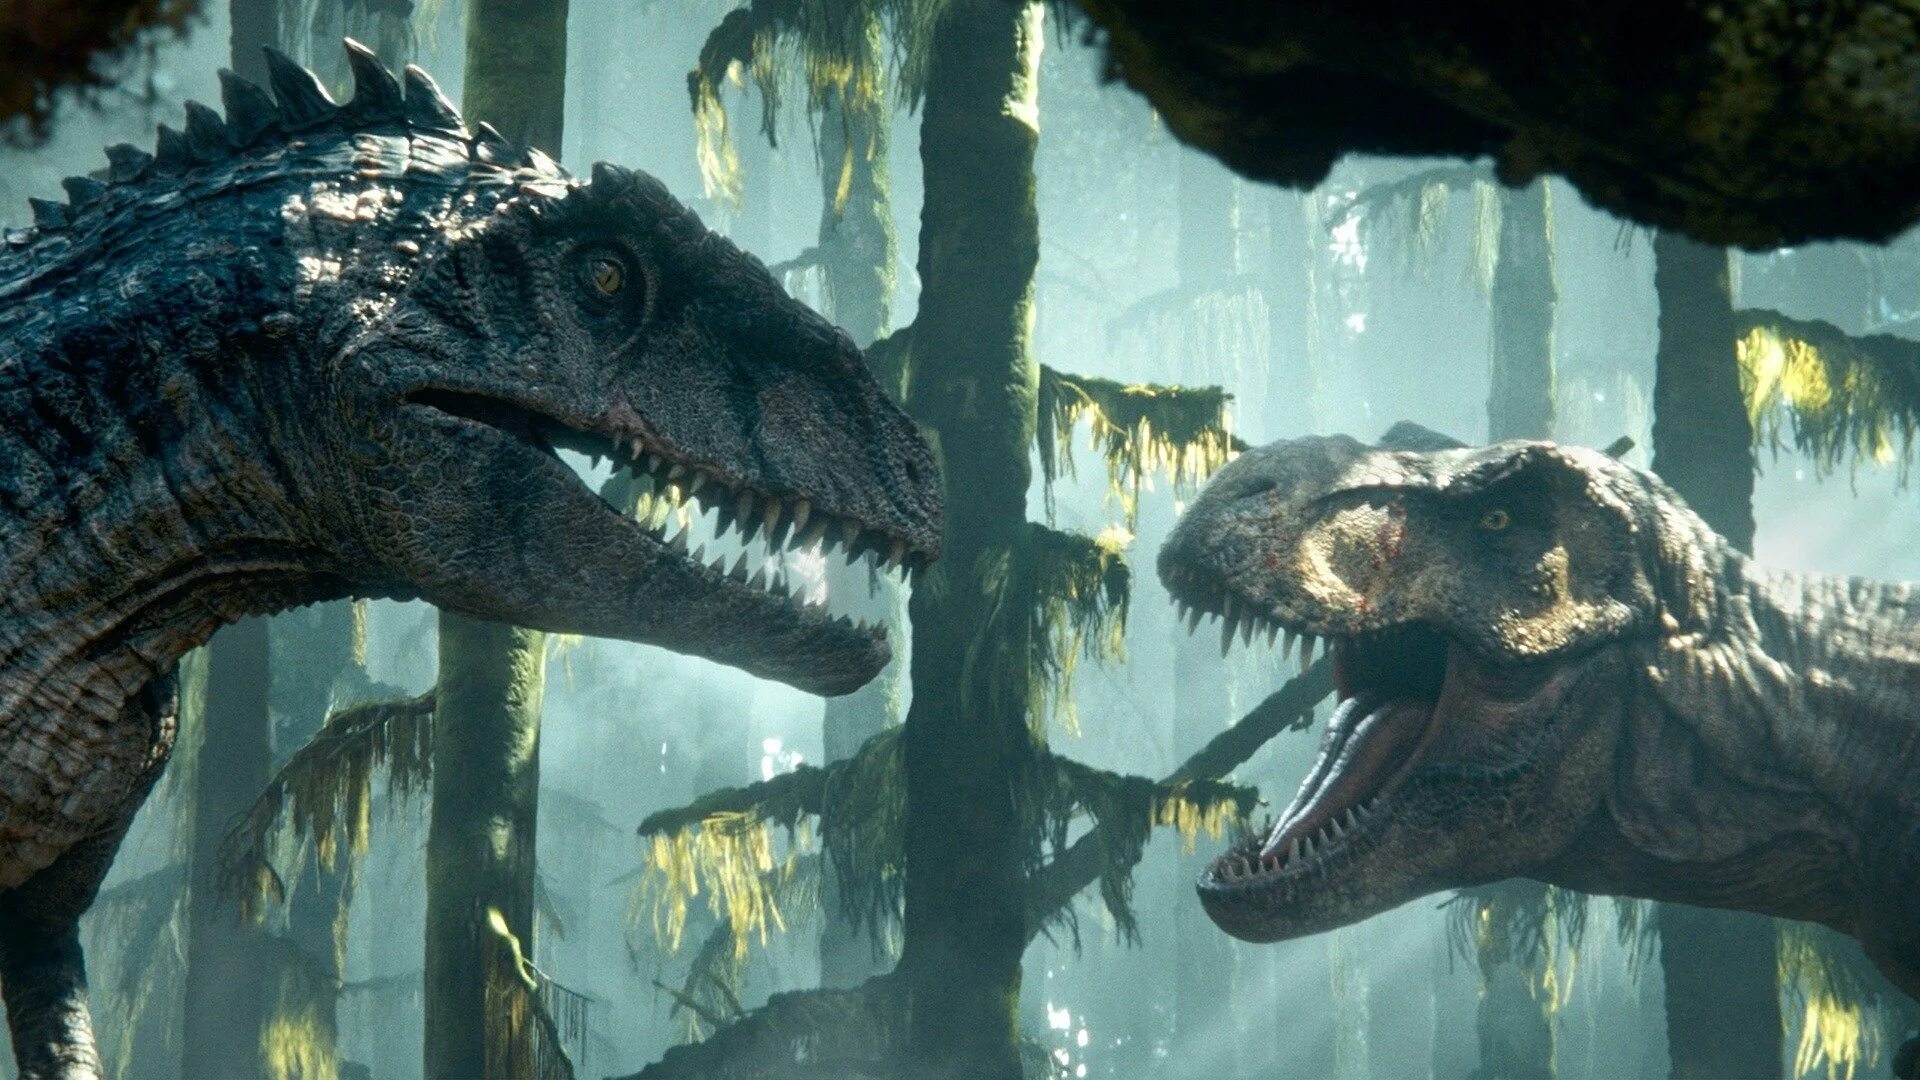 Динозавры выходят. Мир Юрского периода господство. Гигантозавр мир Юрского периода 3 господство. Мир Юрского периода: господство (Jurassic World: Dominion) 2022.